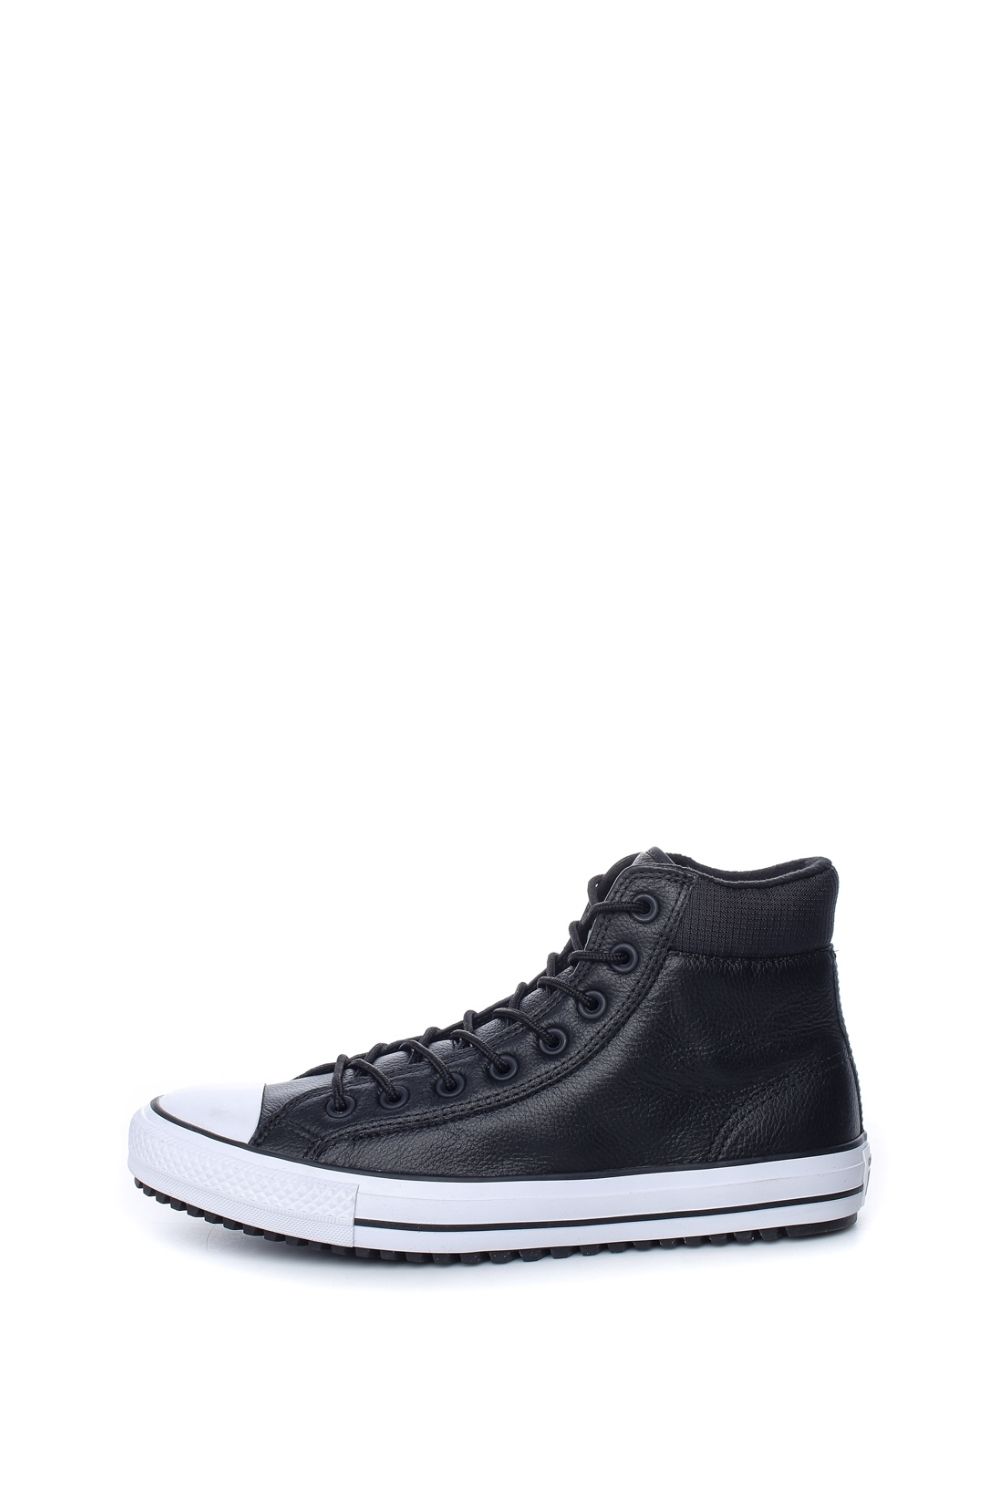 Ανδρικά/Παπούτσια/Sneakers CONVERSE - Unisex ψηλά sneakers CONVERSE CHUCK TAYLOR ALL STAR PC μαύρα